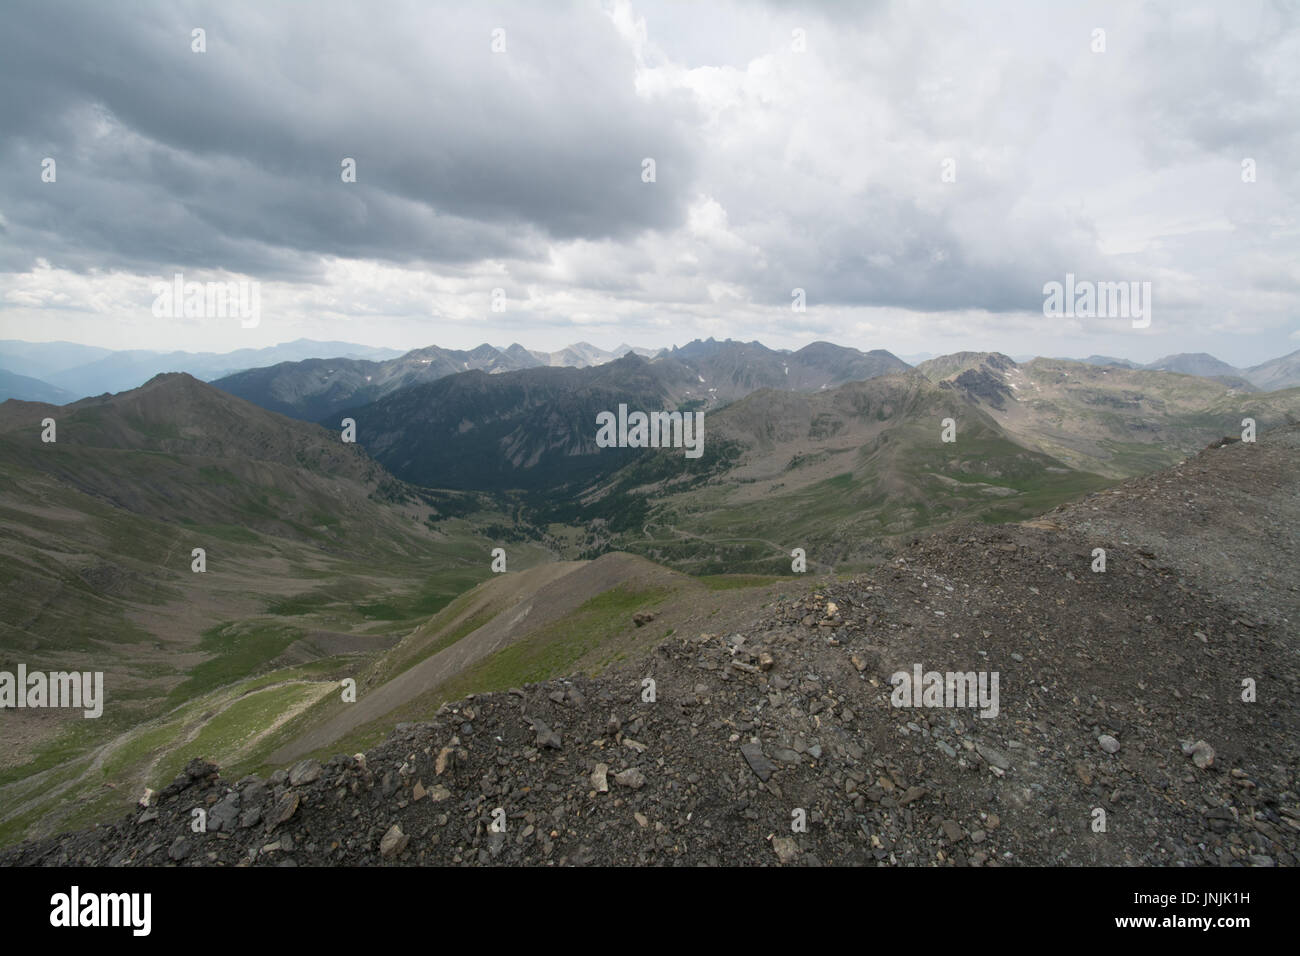 Visualizzare al Col de la Bonette sulle Alpi francesi - paesaggio montano con cielo nuvoloso Foto Stock